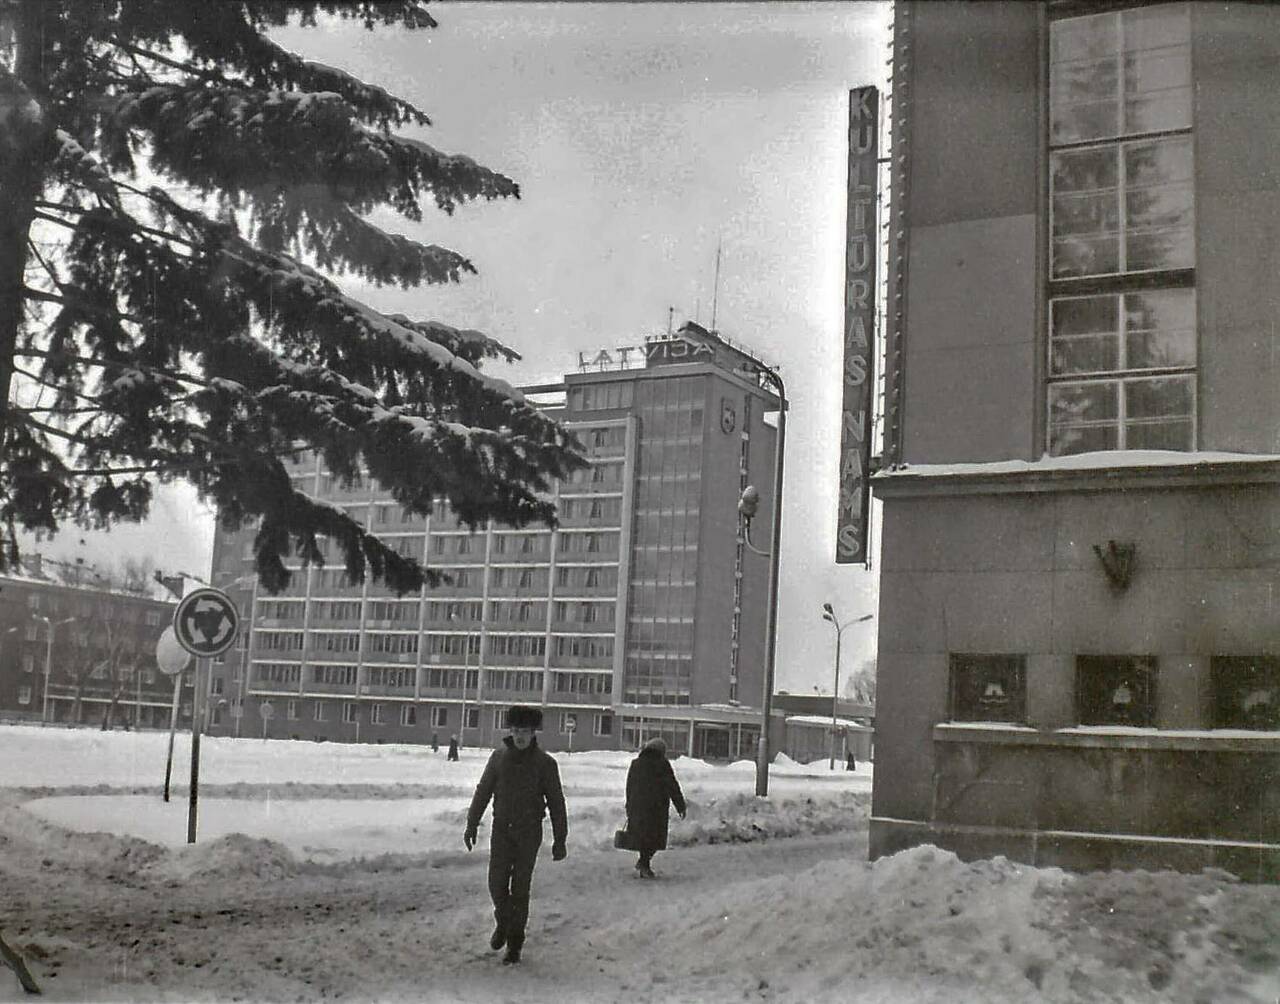 Центральная площадь. Дом культуры № 1 (Дом Единства). Зима 1985 года.